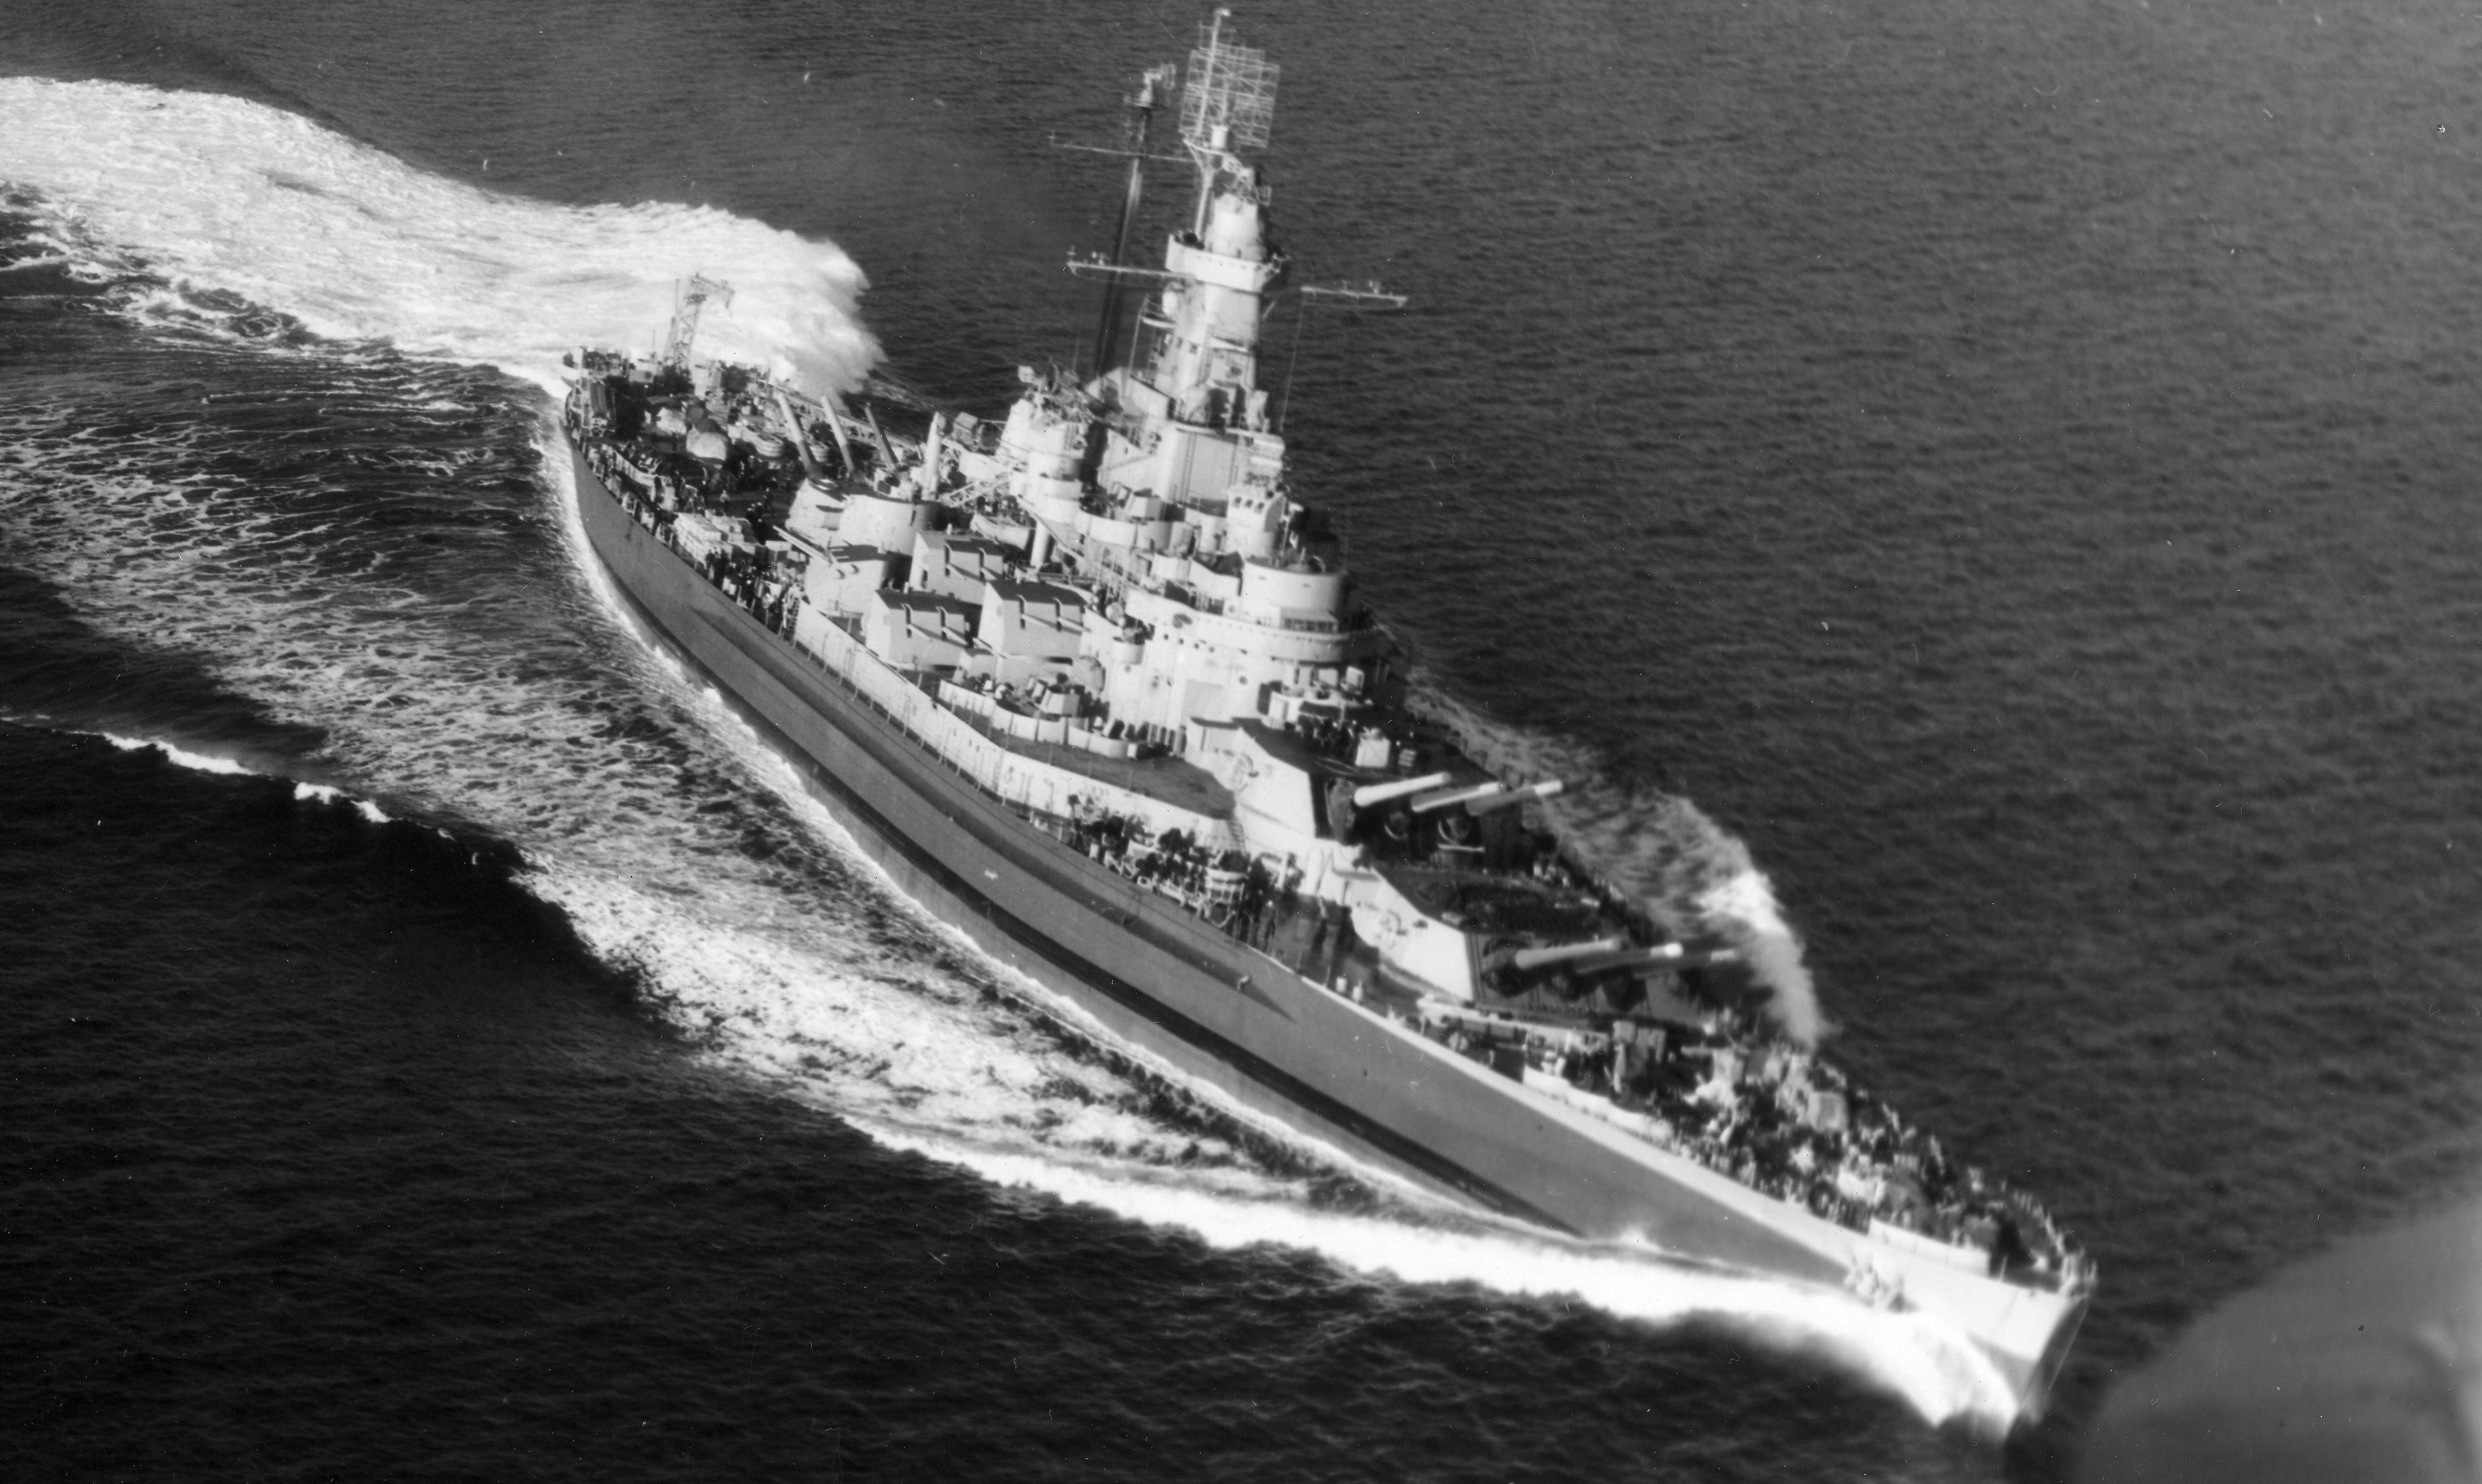 原创二战后期横扫日本列岛,胜利后战舰却被迅速除名,作为废品出售